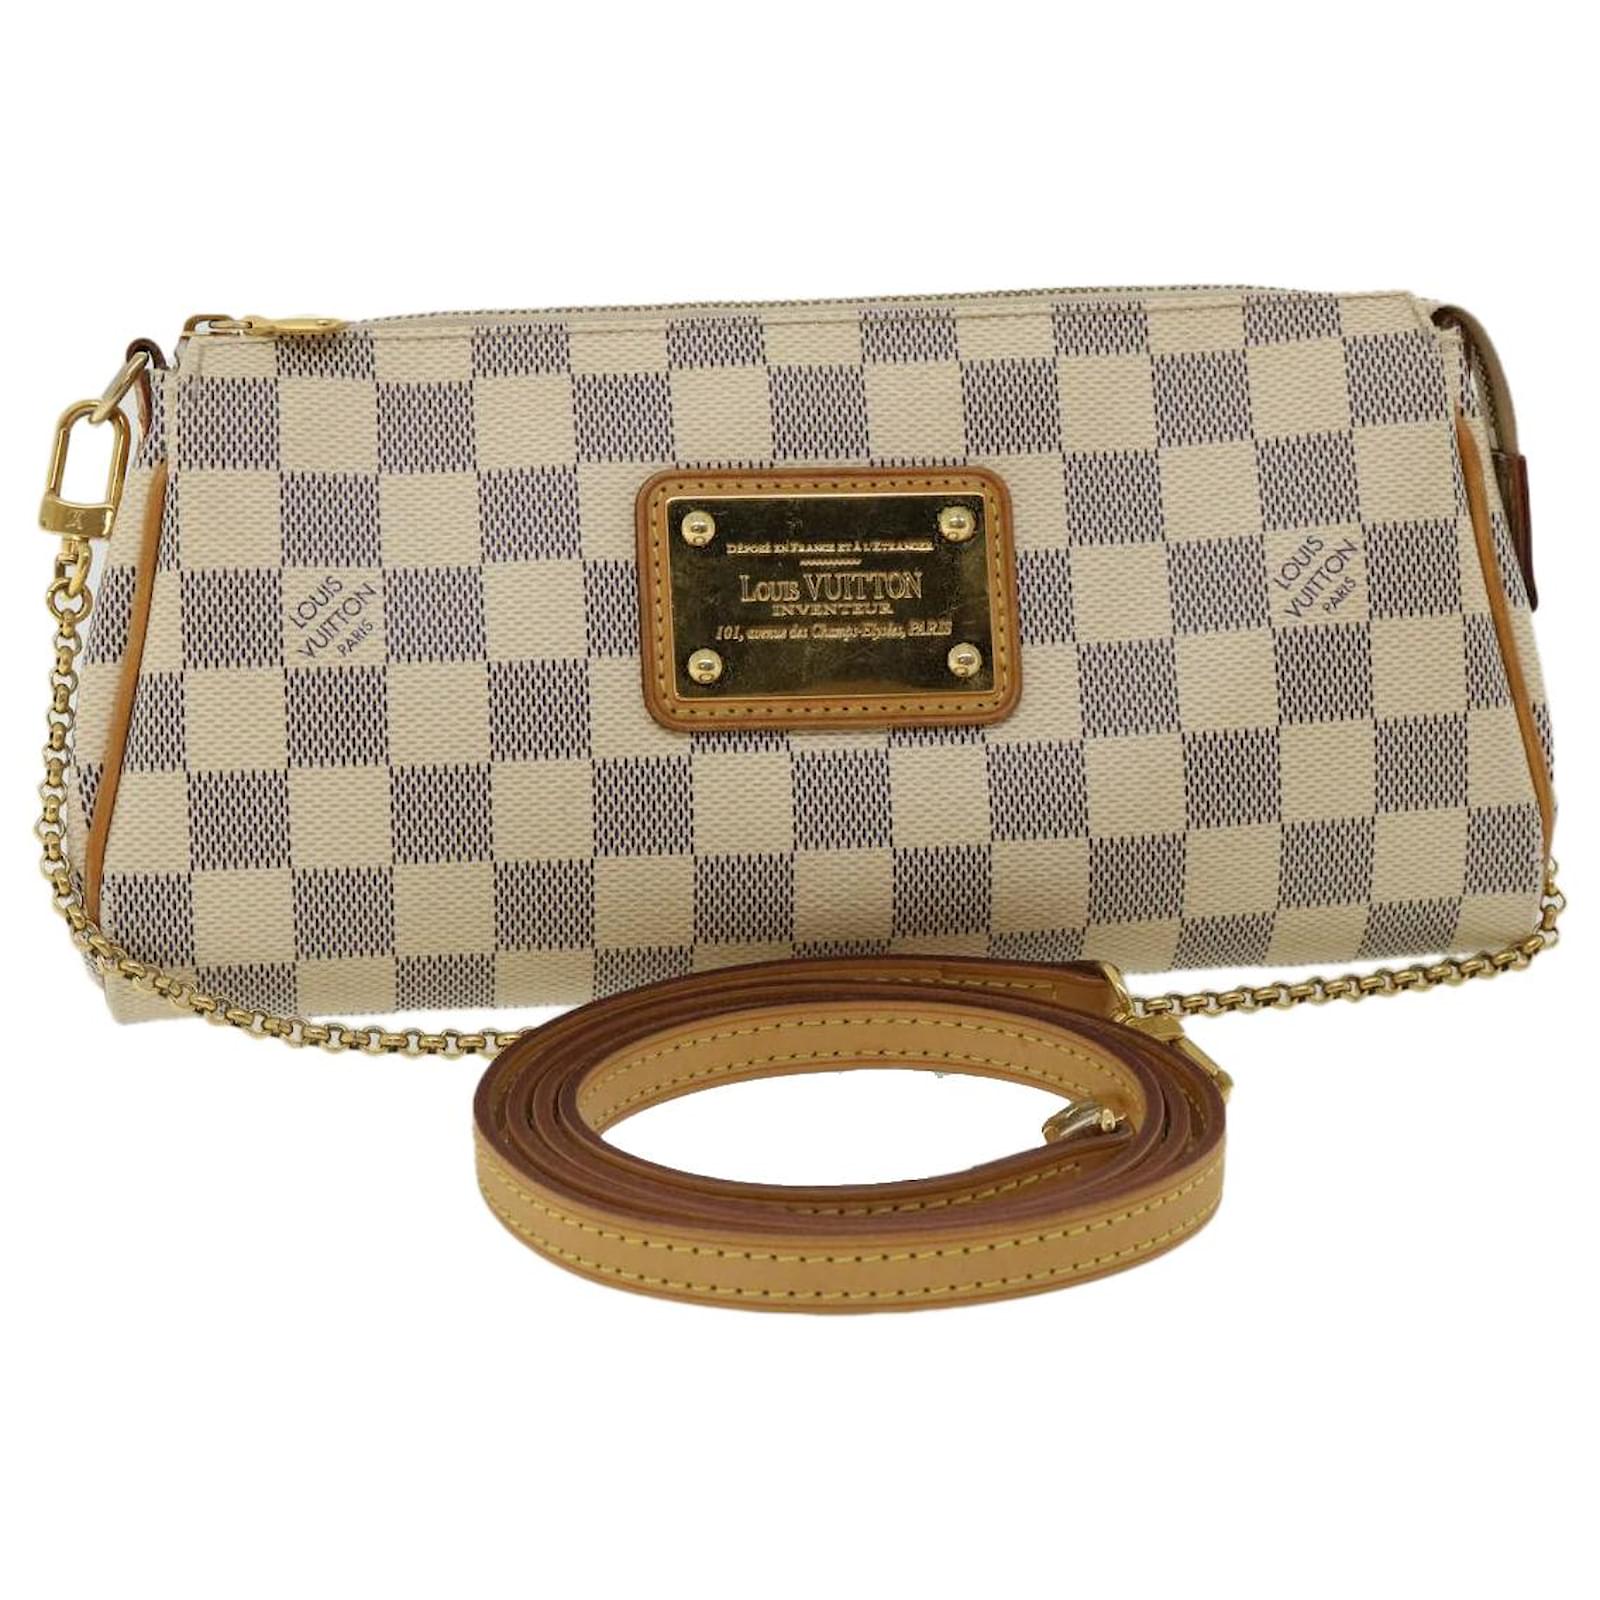 Handbags Louis Vuitton Louis Vuitton Damier Azur Eva Shoulder Bag 2way N55214 LV Auth 31850a